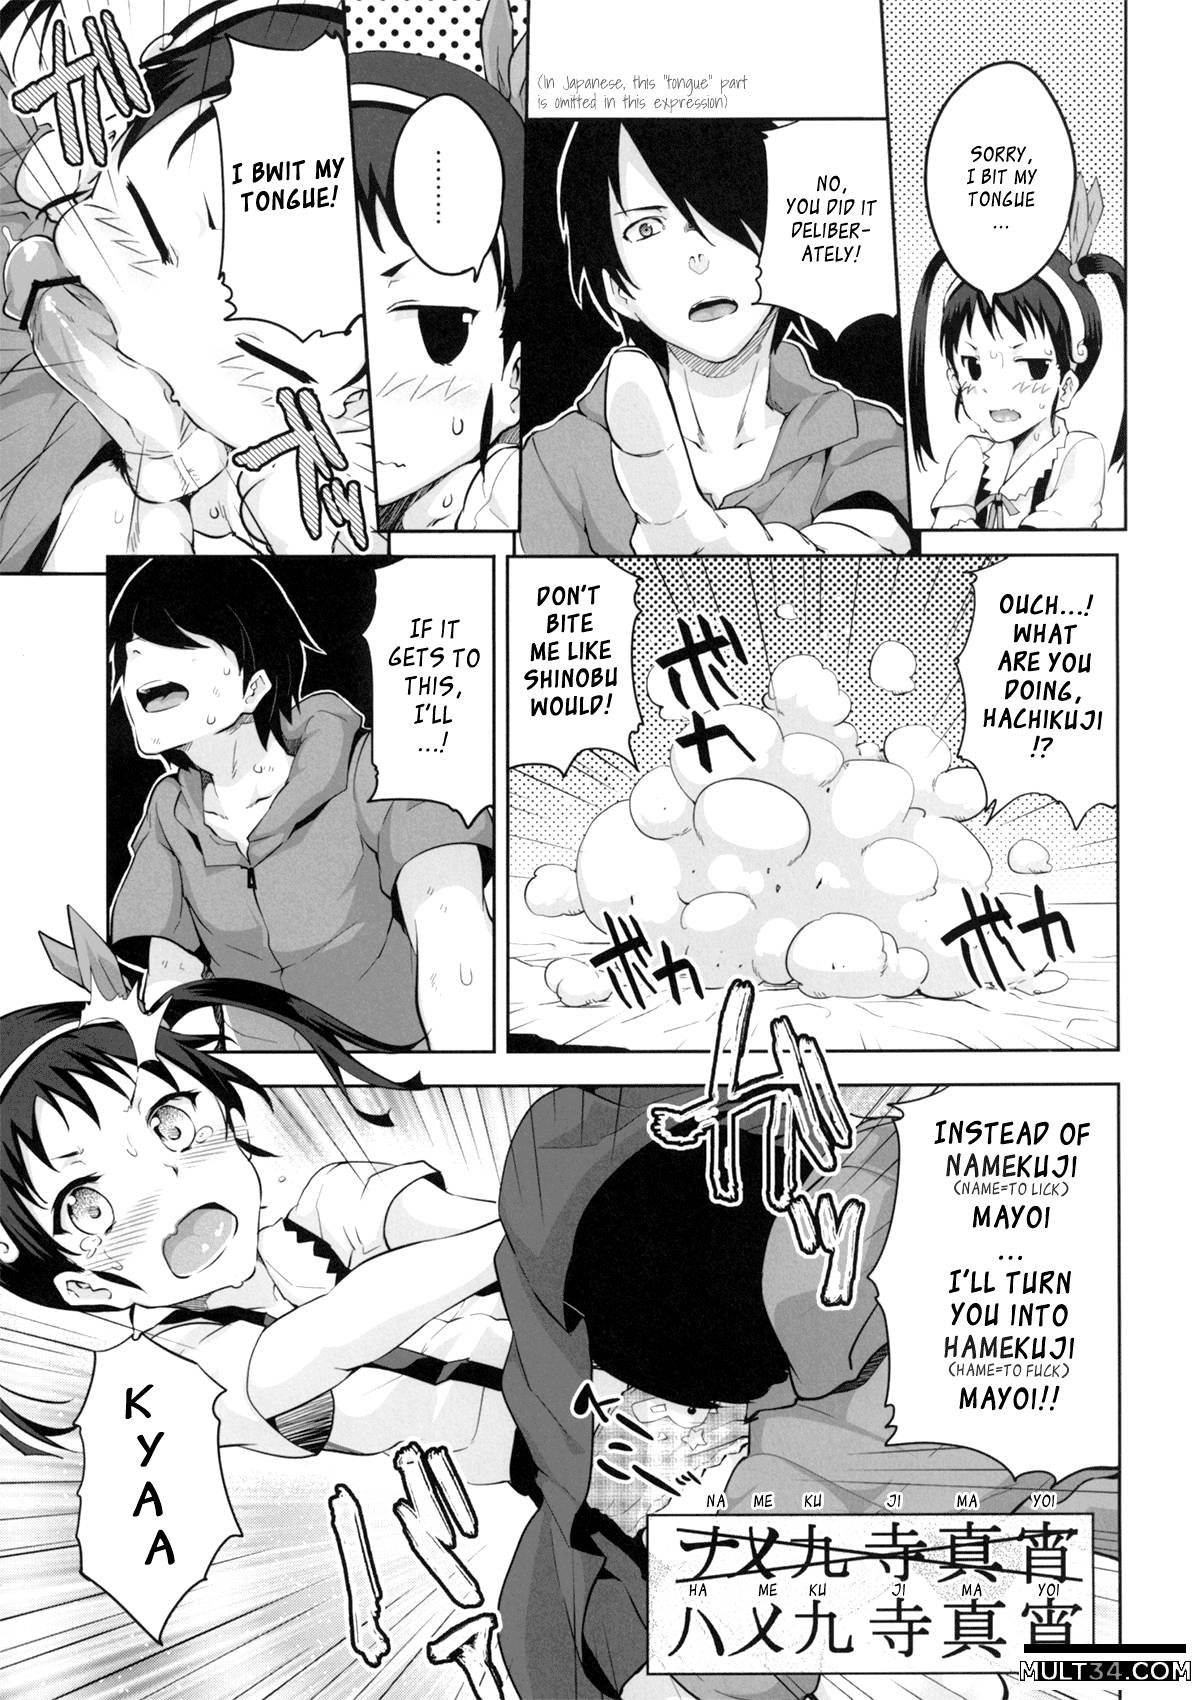 Namekuji Mayoigatari page 8